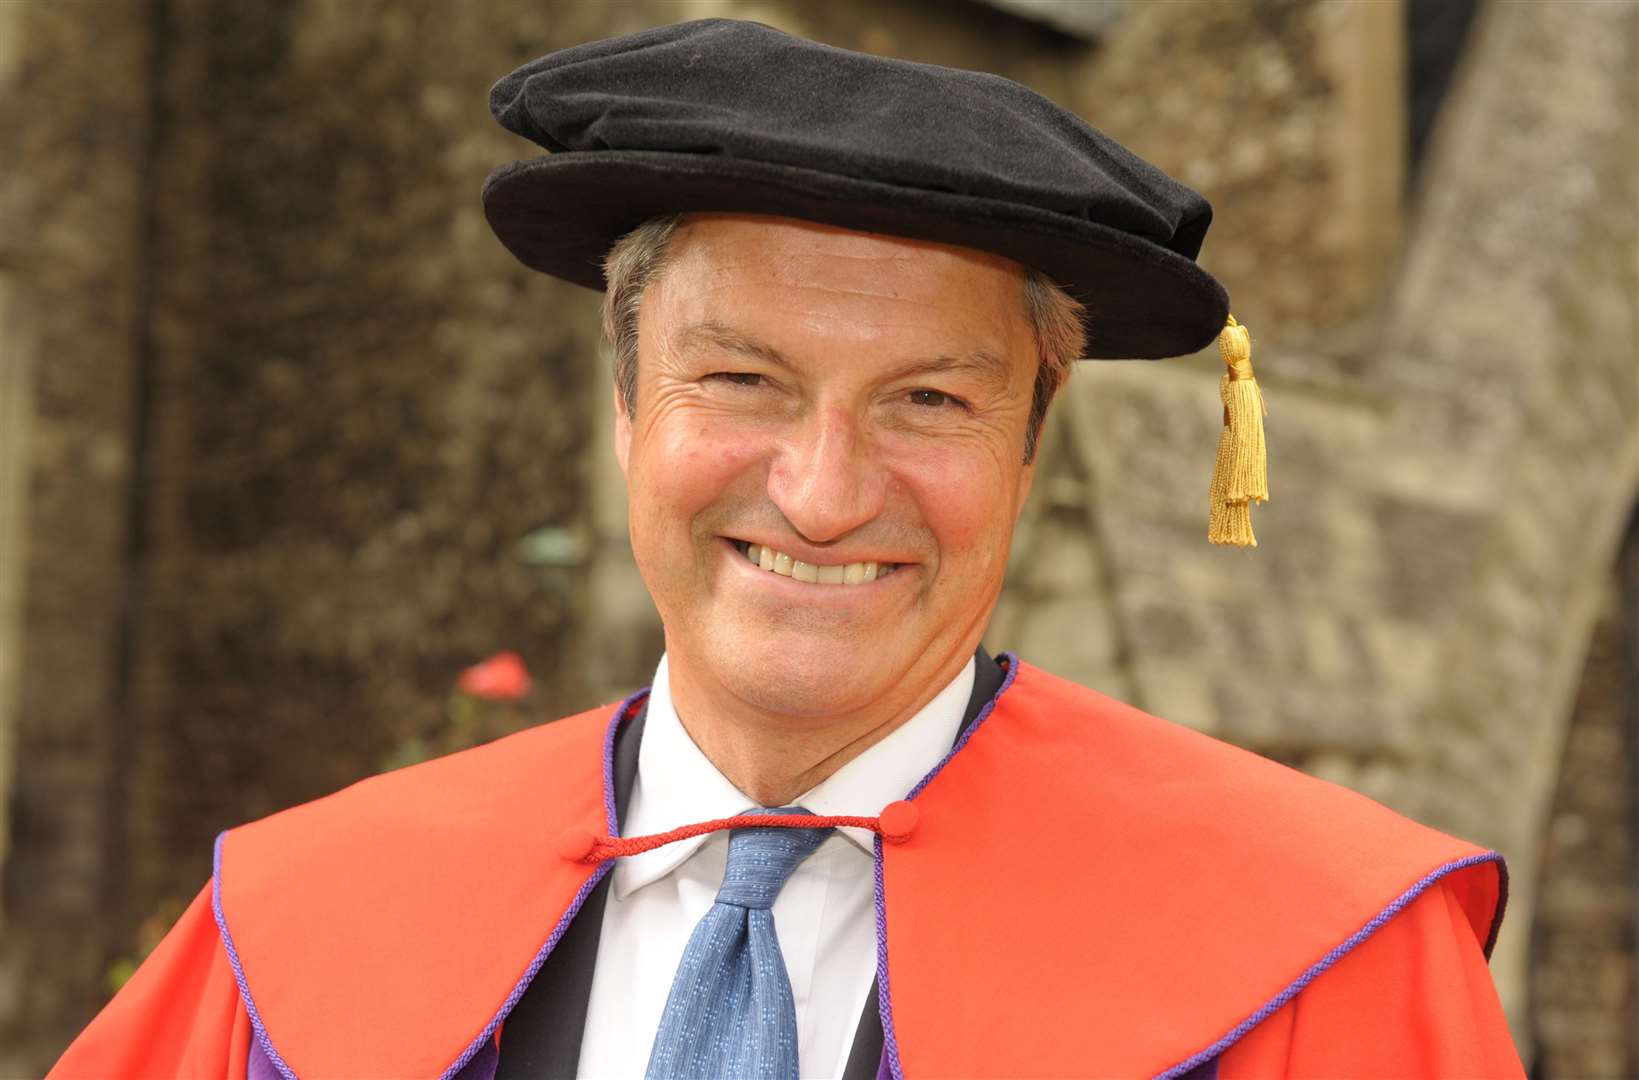 University of Kent chancellor Gavin Esler